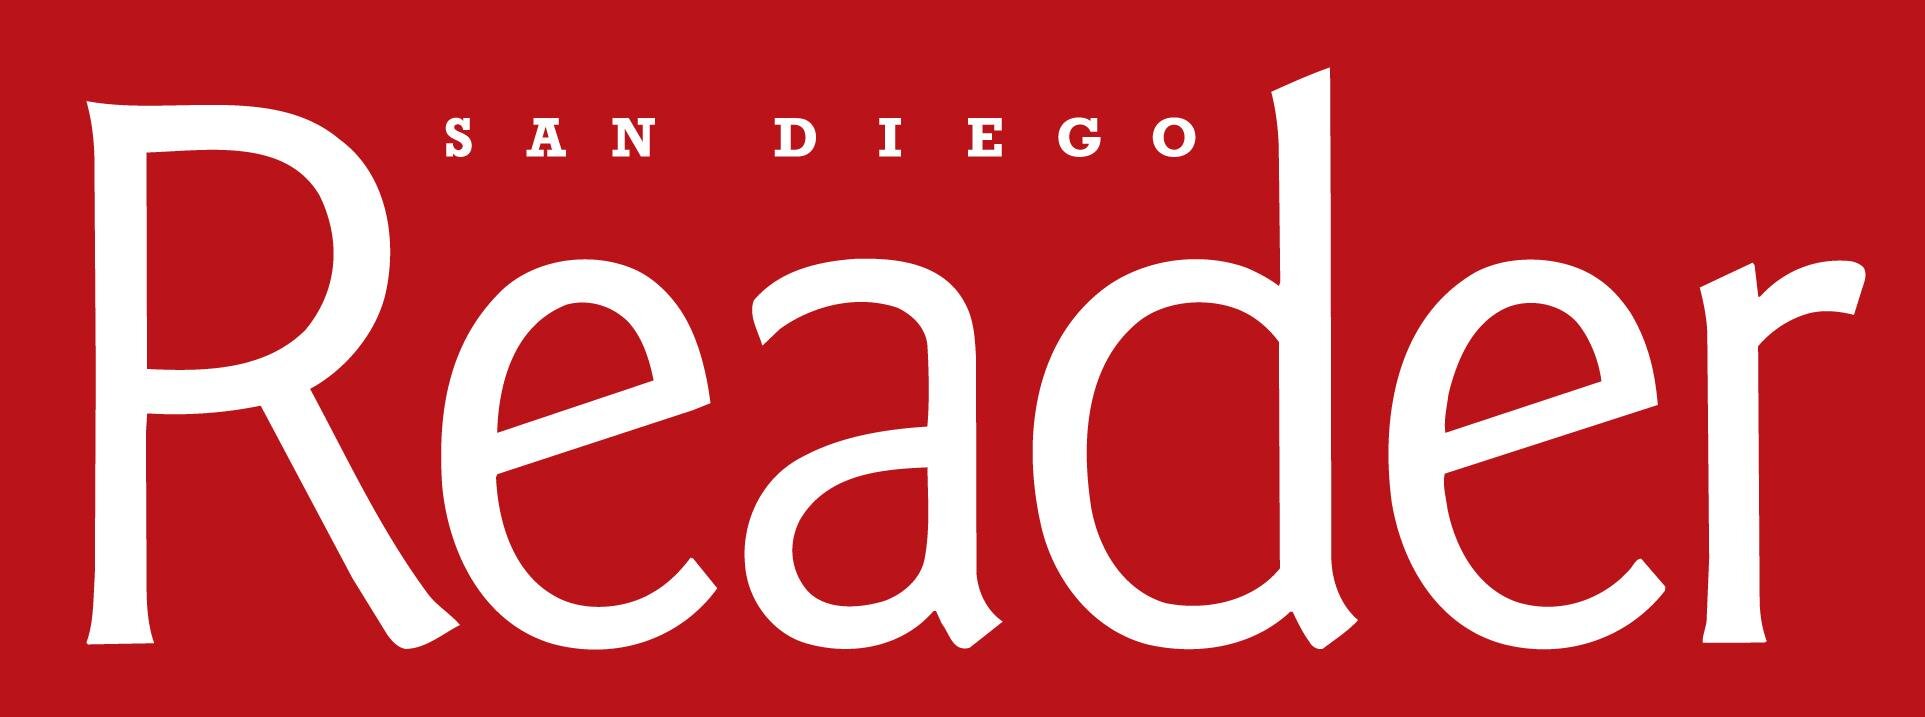 San Diego Reader.jpg